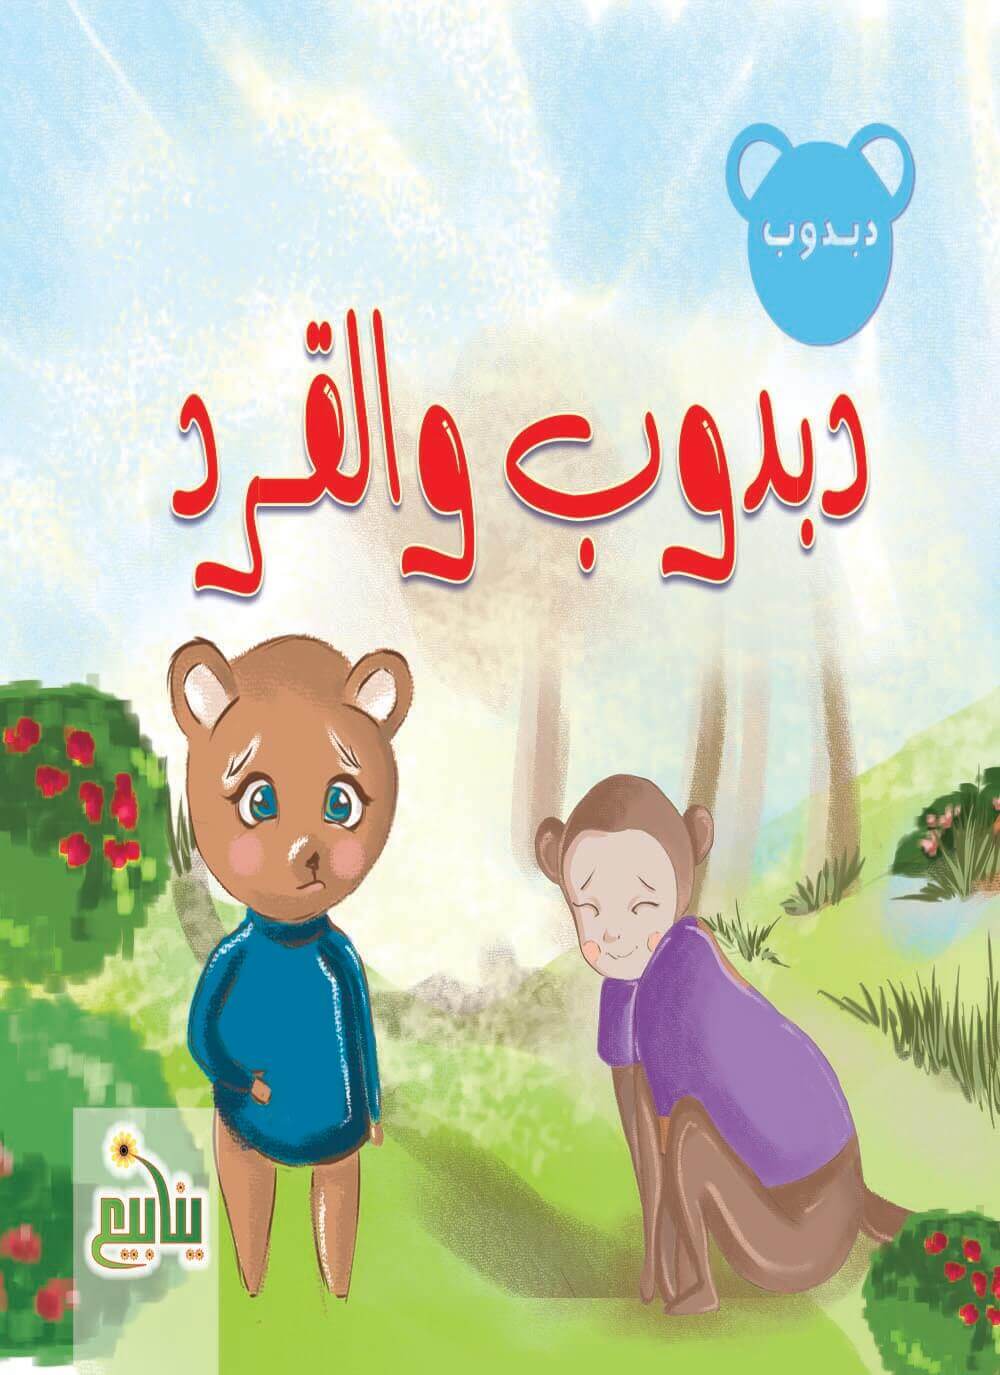 سلسلة حكايات دبدوب كتب أطفال شركة ينابيع للنشر والتوزيع